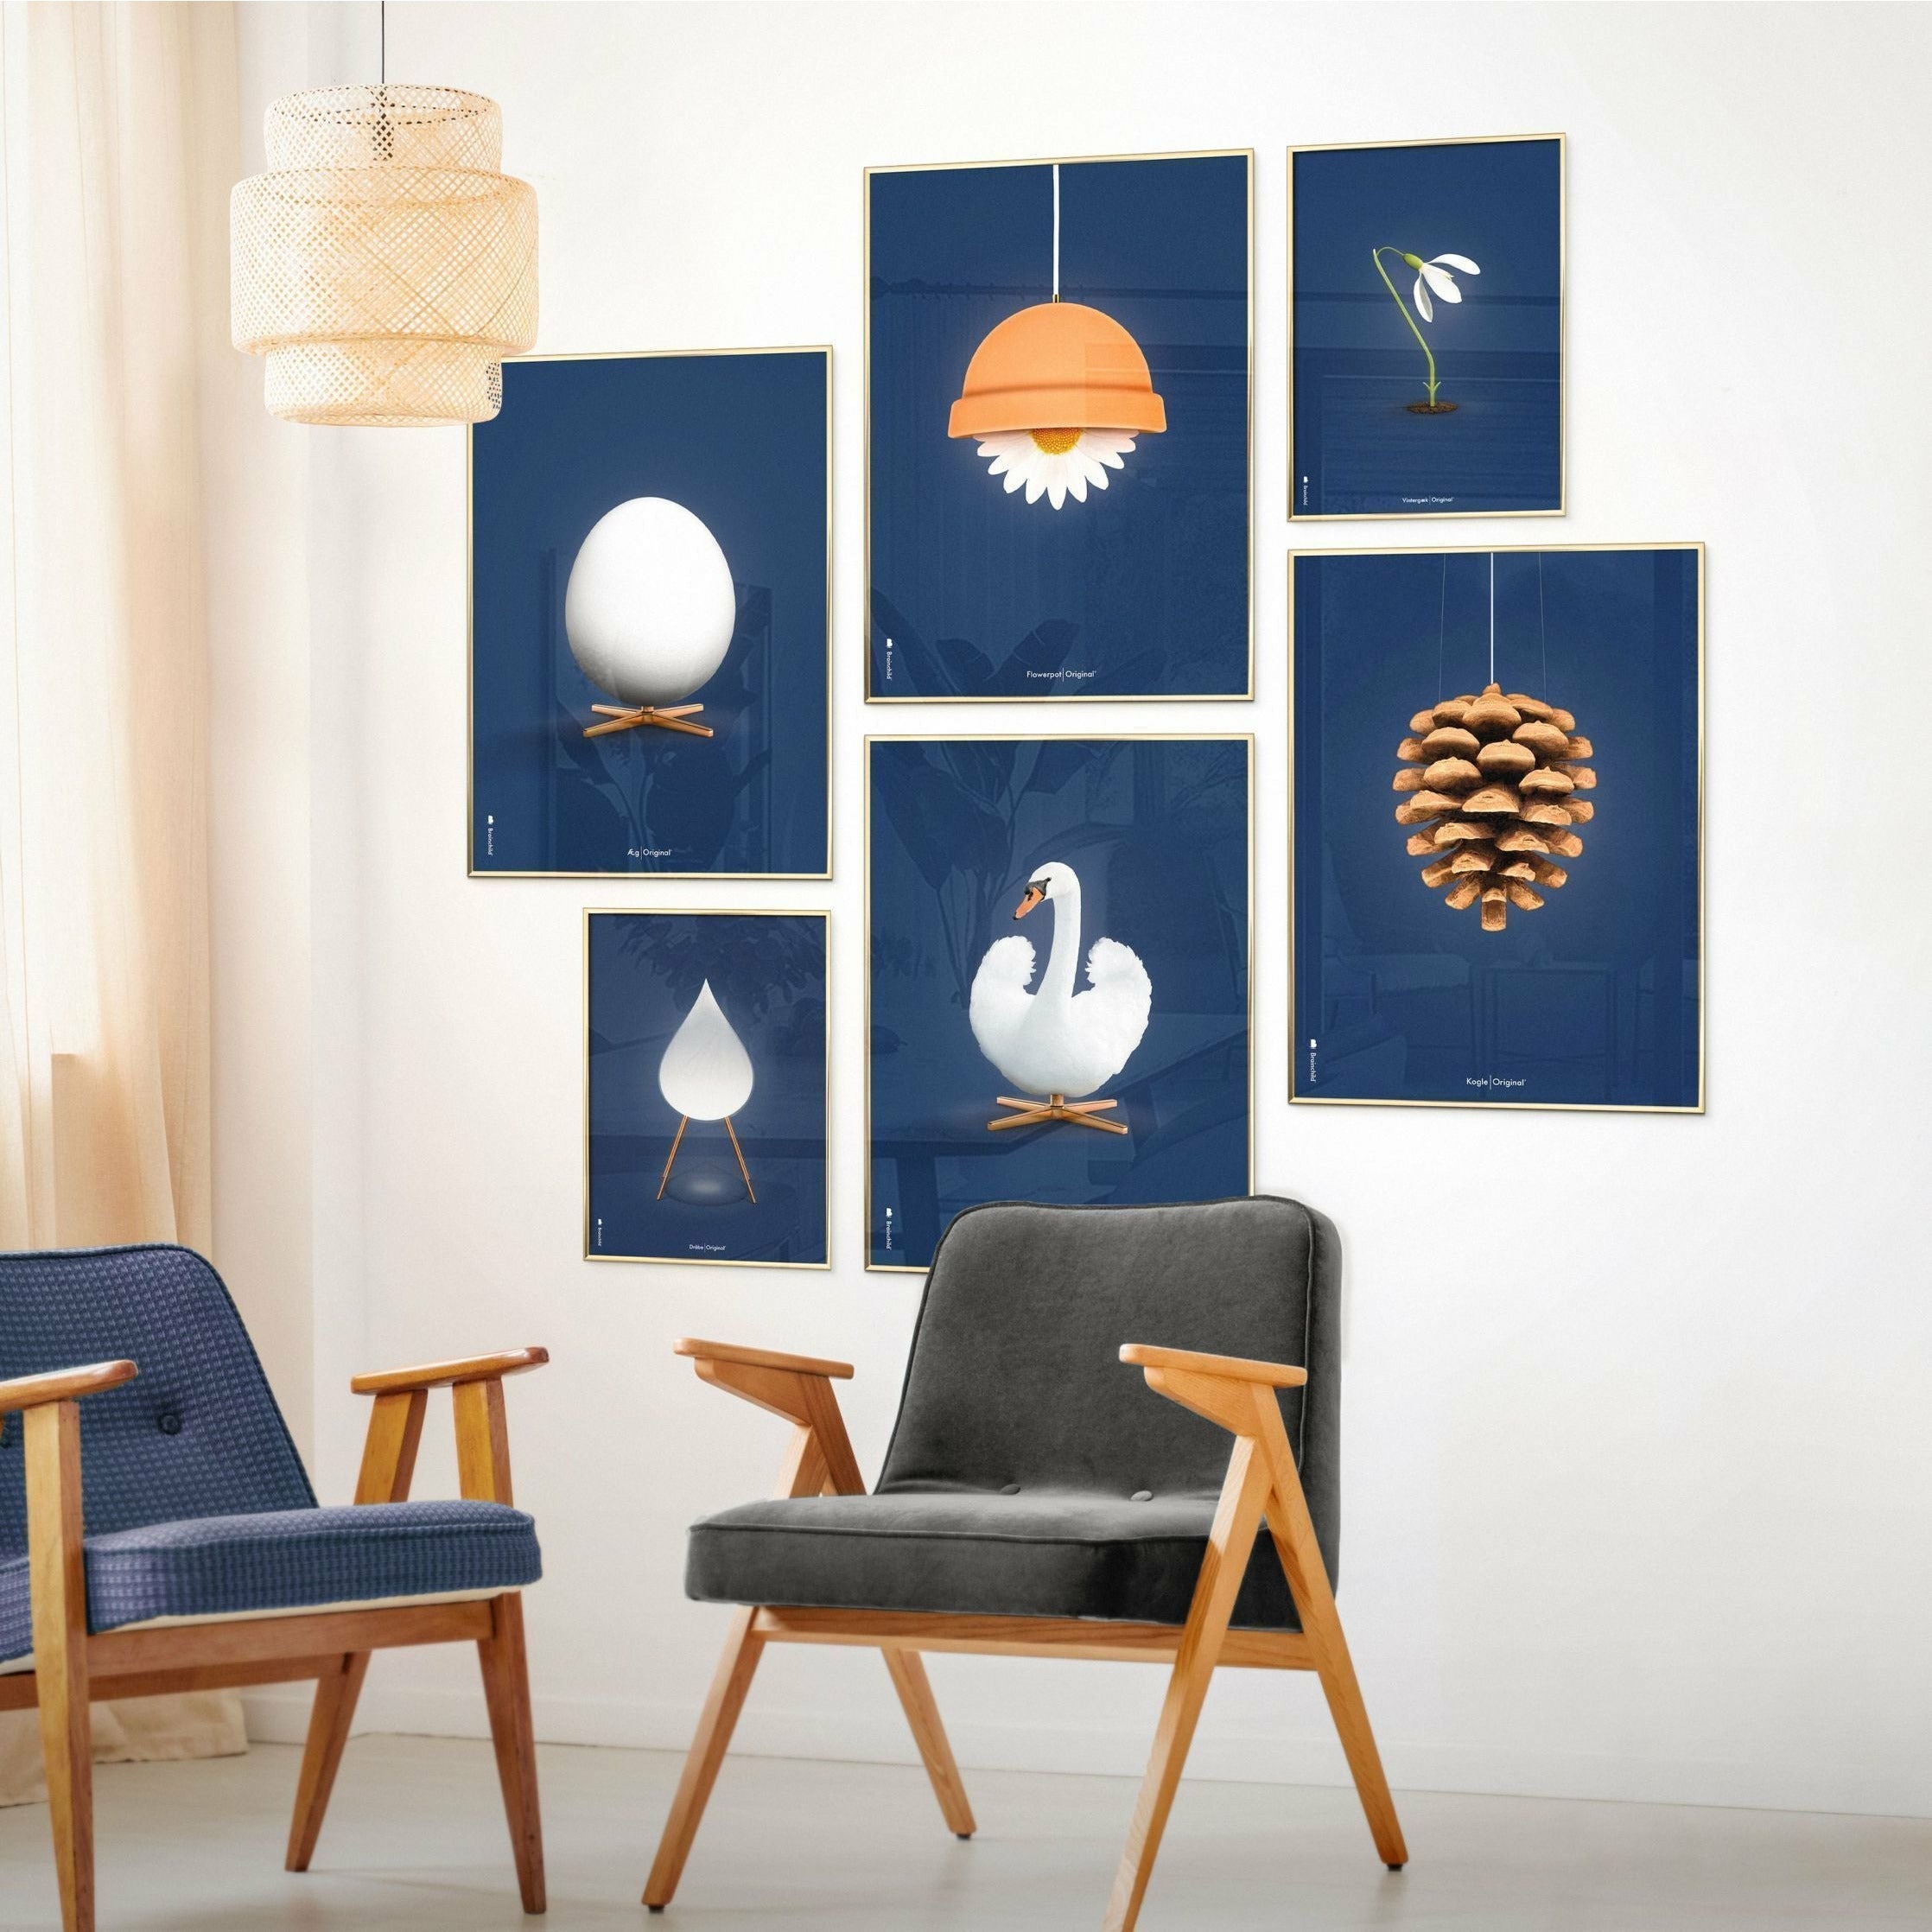 Pomysły Swan Classic Plakat, Free Wood Frame A5, ciemnoniebieskie tło